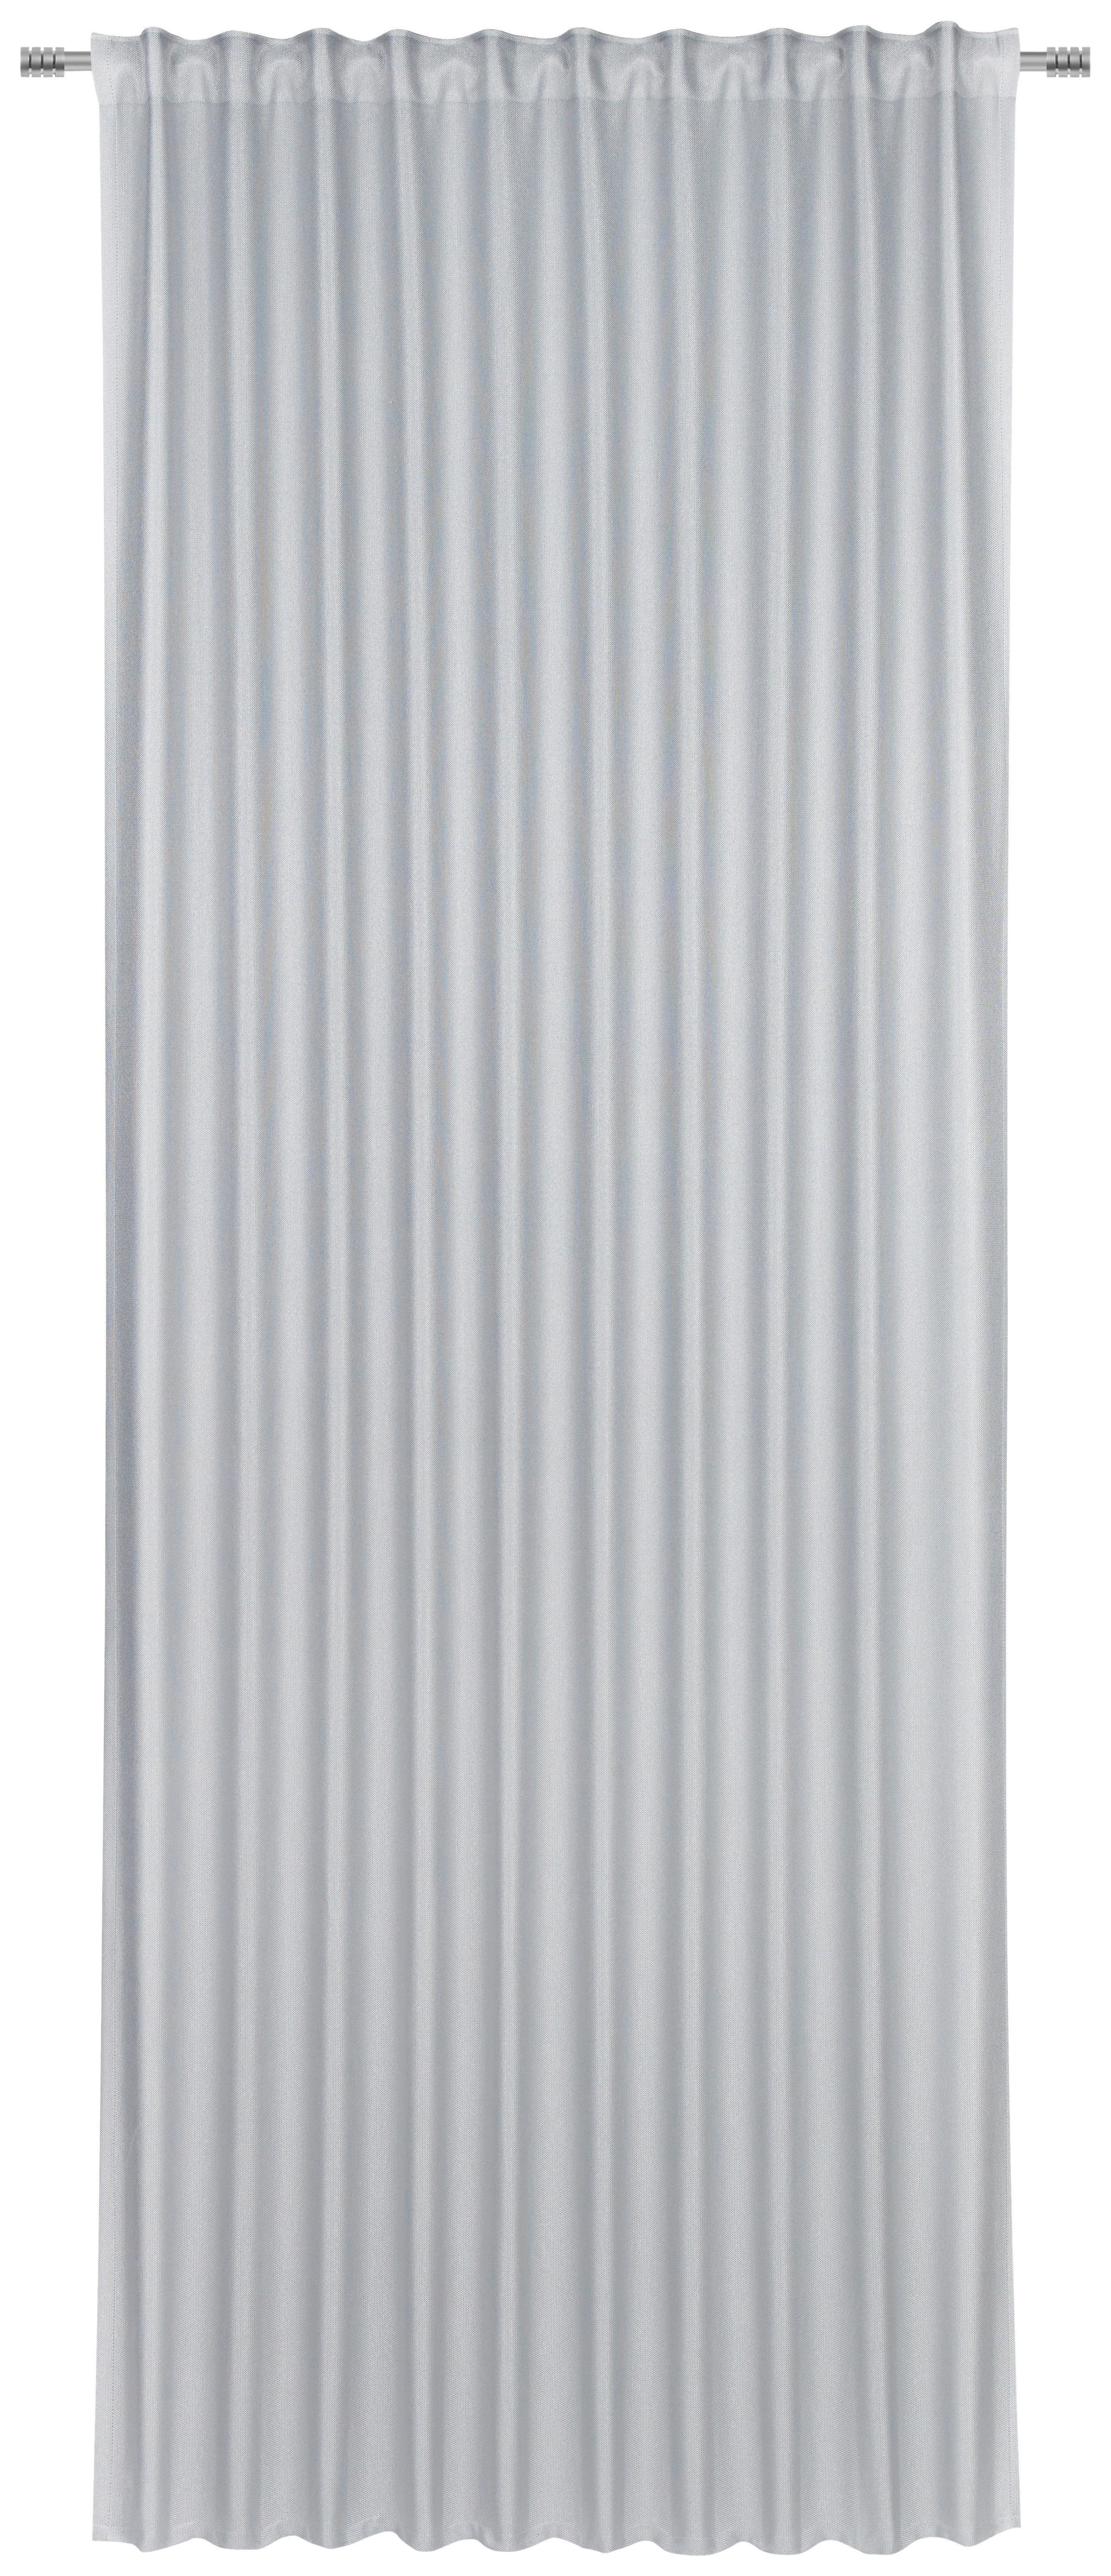 KÉSZFÜGGÖNY Részben fényzáró  - Ezüst, Konventionell, Textil (140/260cm) - Dieter Knoll